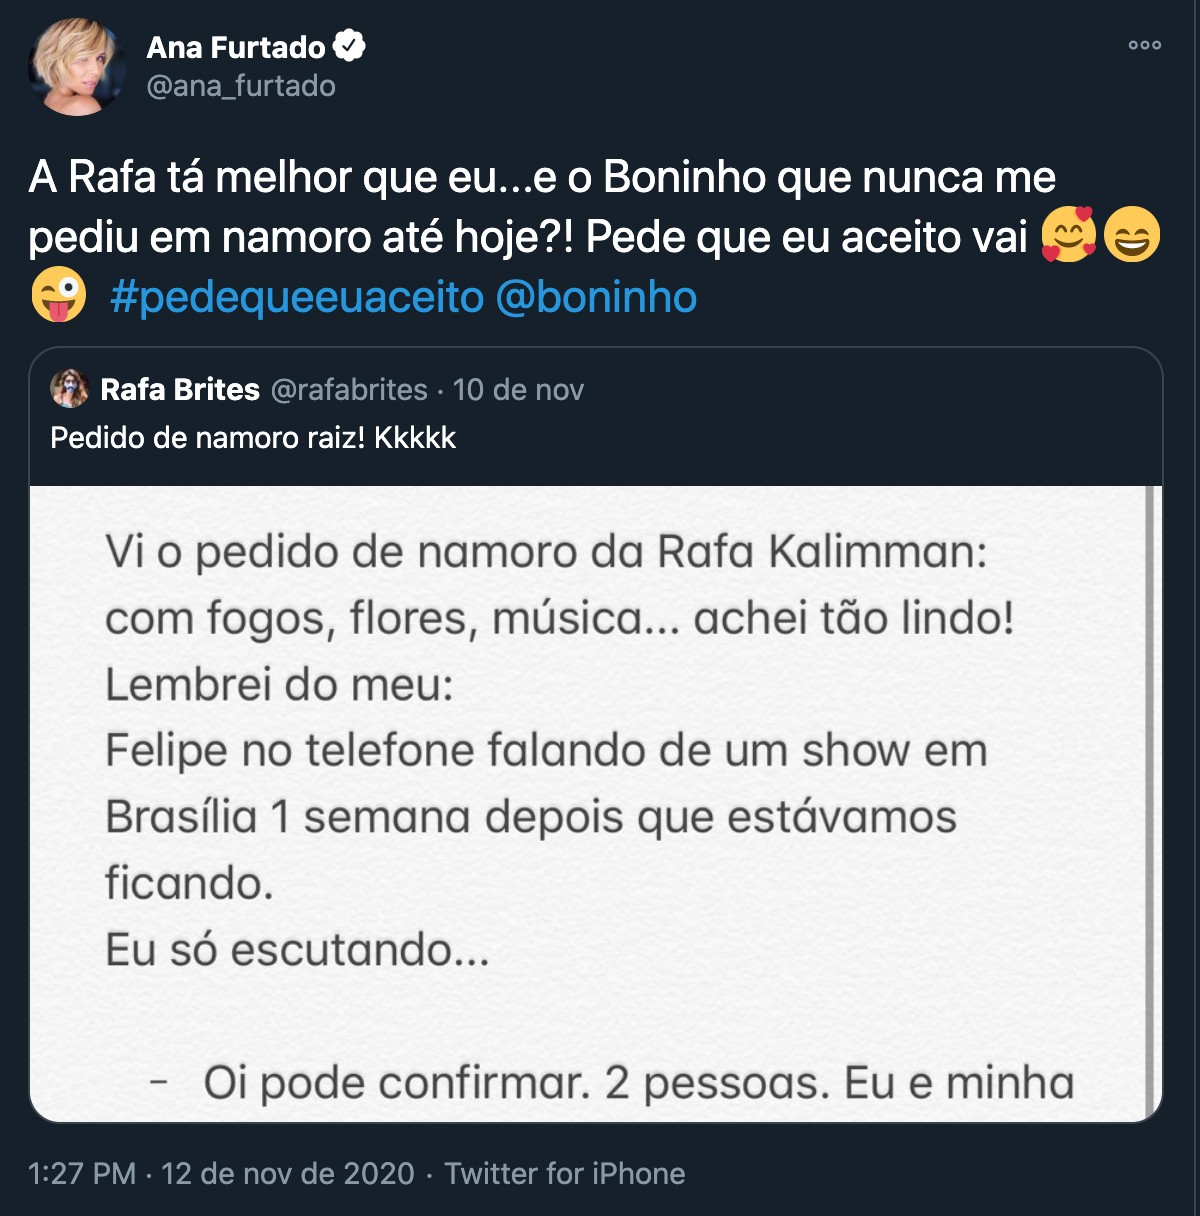 Ana Furtado revela que Boninho nunca a pediu em namoro (Foto: Reprodução/ Twitter)